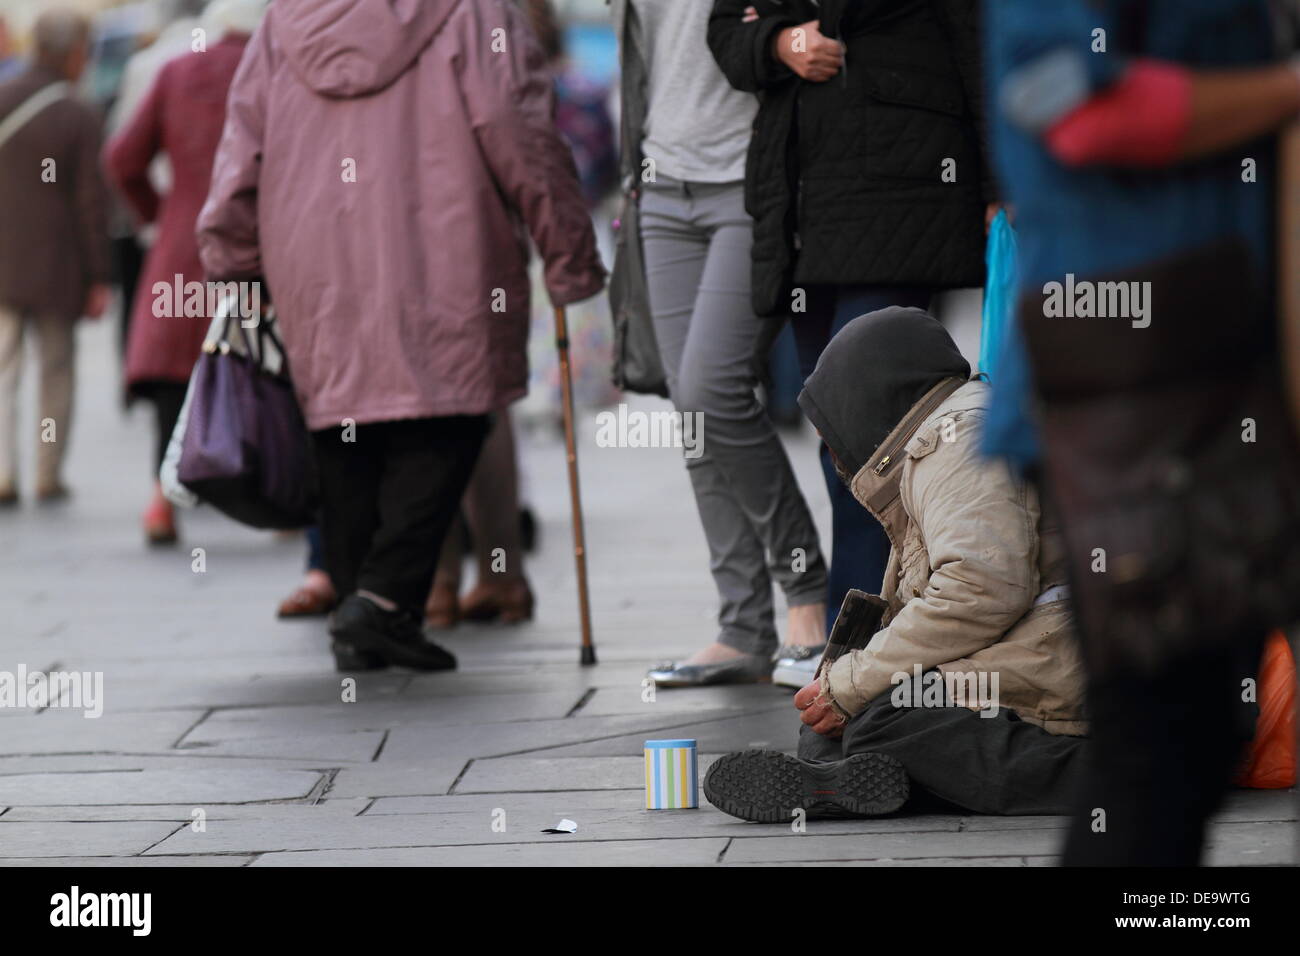 Un homme prie pour changer dans la rue, de la pauvreté, questions sociales, les pauvres, les sans-abri, l'Argyll Street, Glasgow, Scotland, UK Banque D'Images